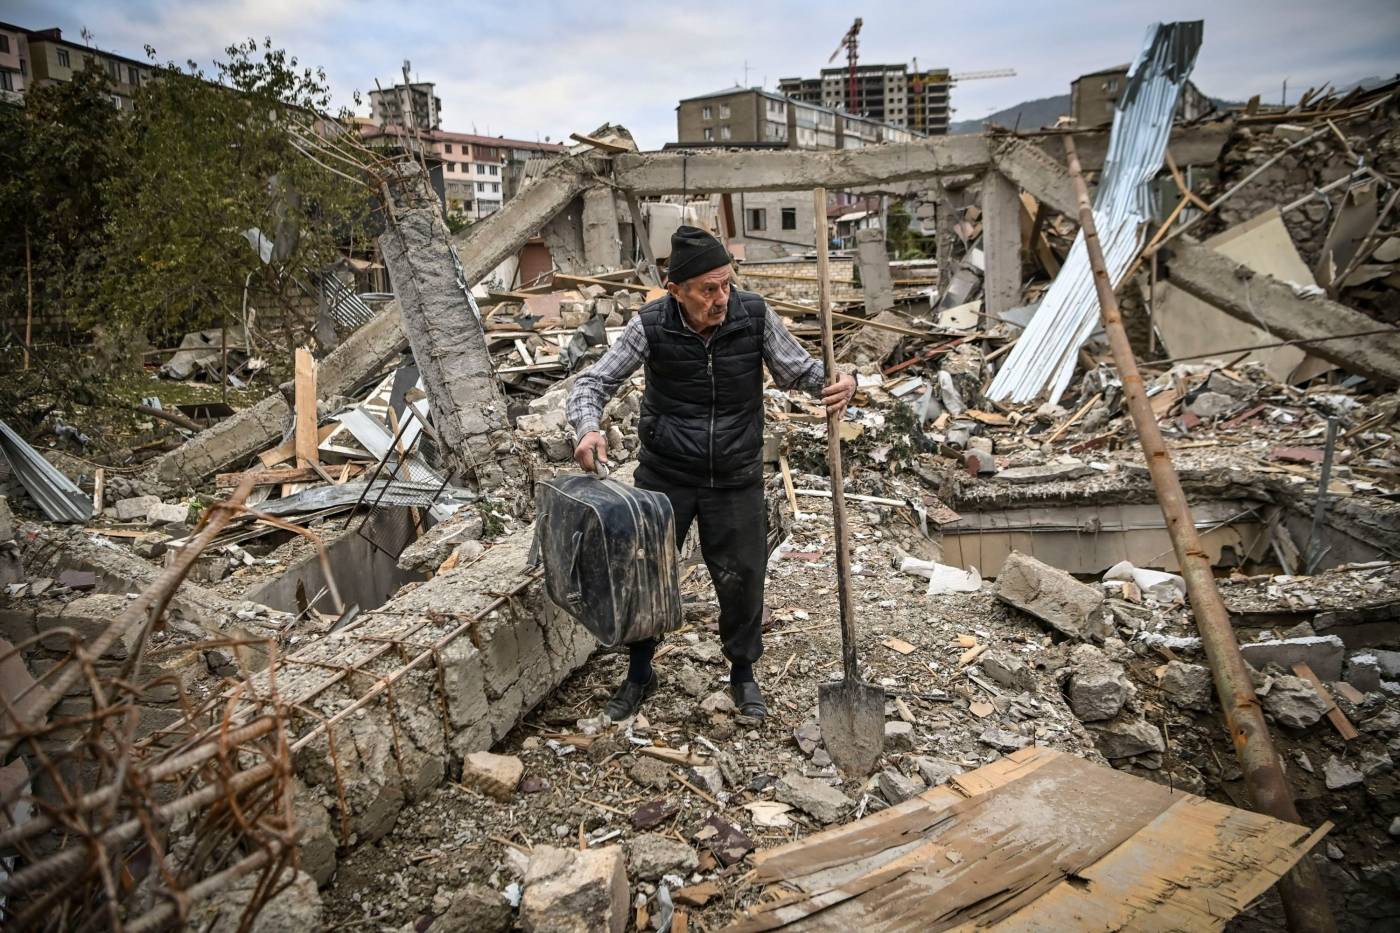 Dele af byen Stepanakert i Nagorno-Karabakh ligger i ruiner efter krigen i 2020 mellem Armenien og Aserbajdsjan.   Foto: Aris Messinis/AFP/NTB.